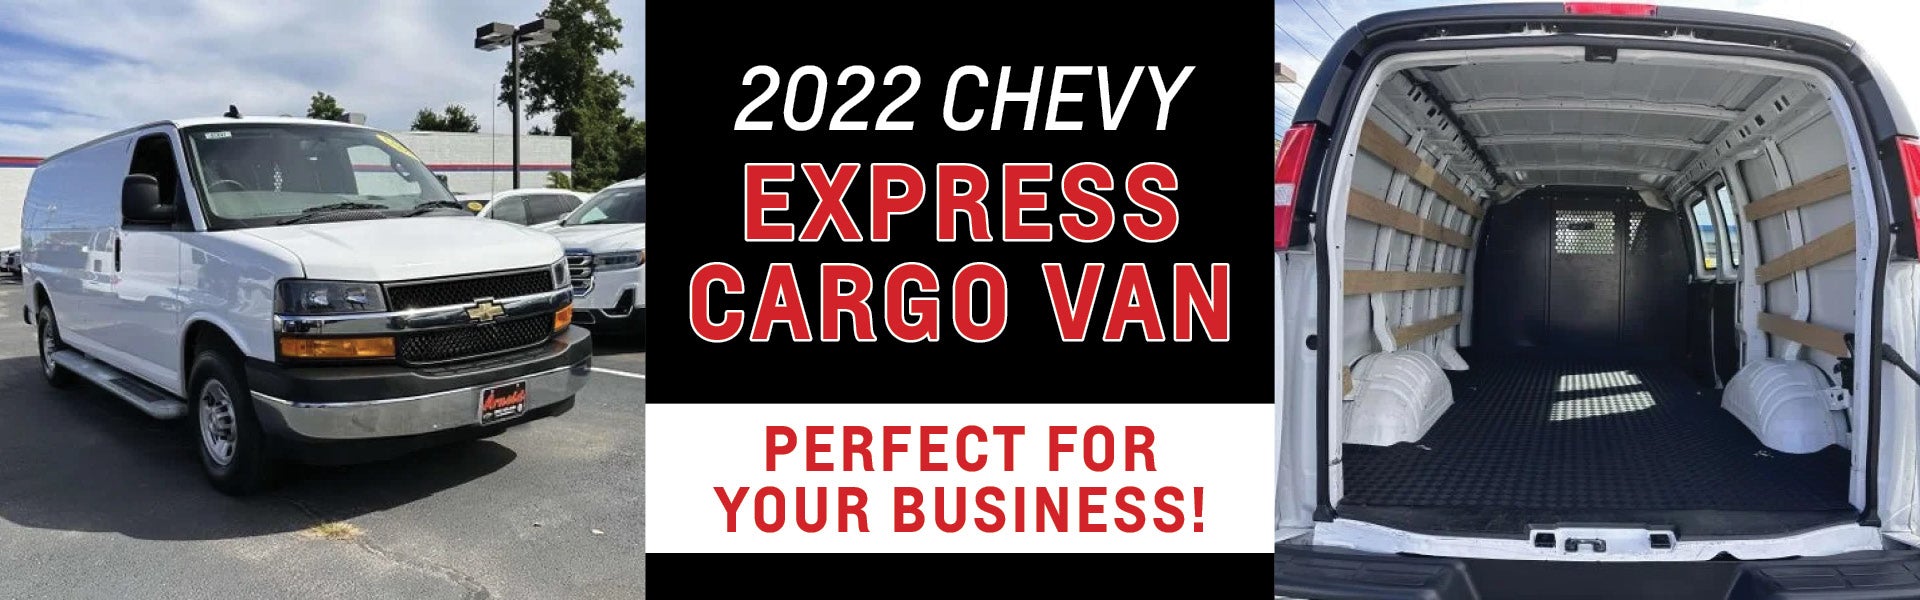 2022 Express Cargo Van